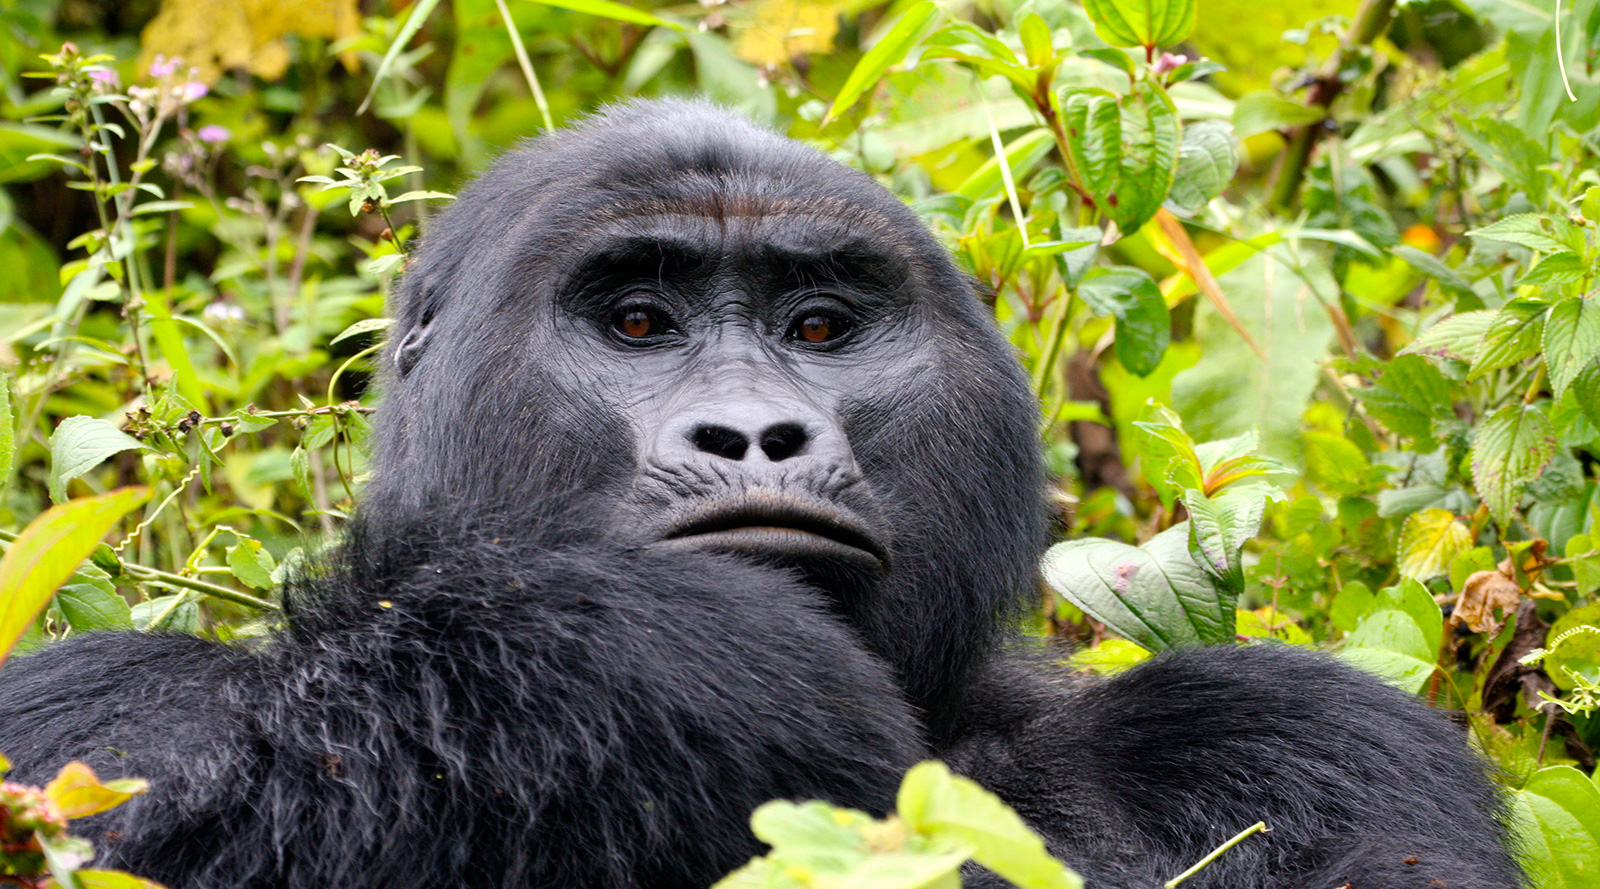 © Benedetta Mazzini | Uganda, Bwindi National Park